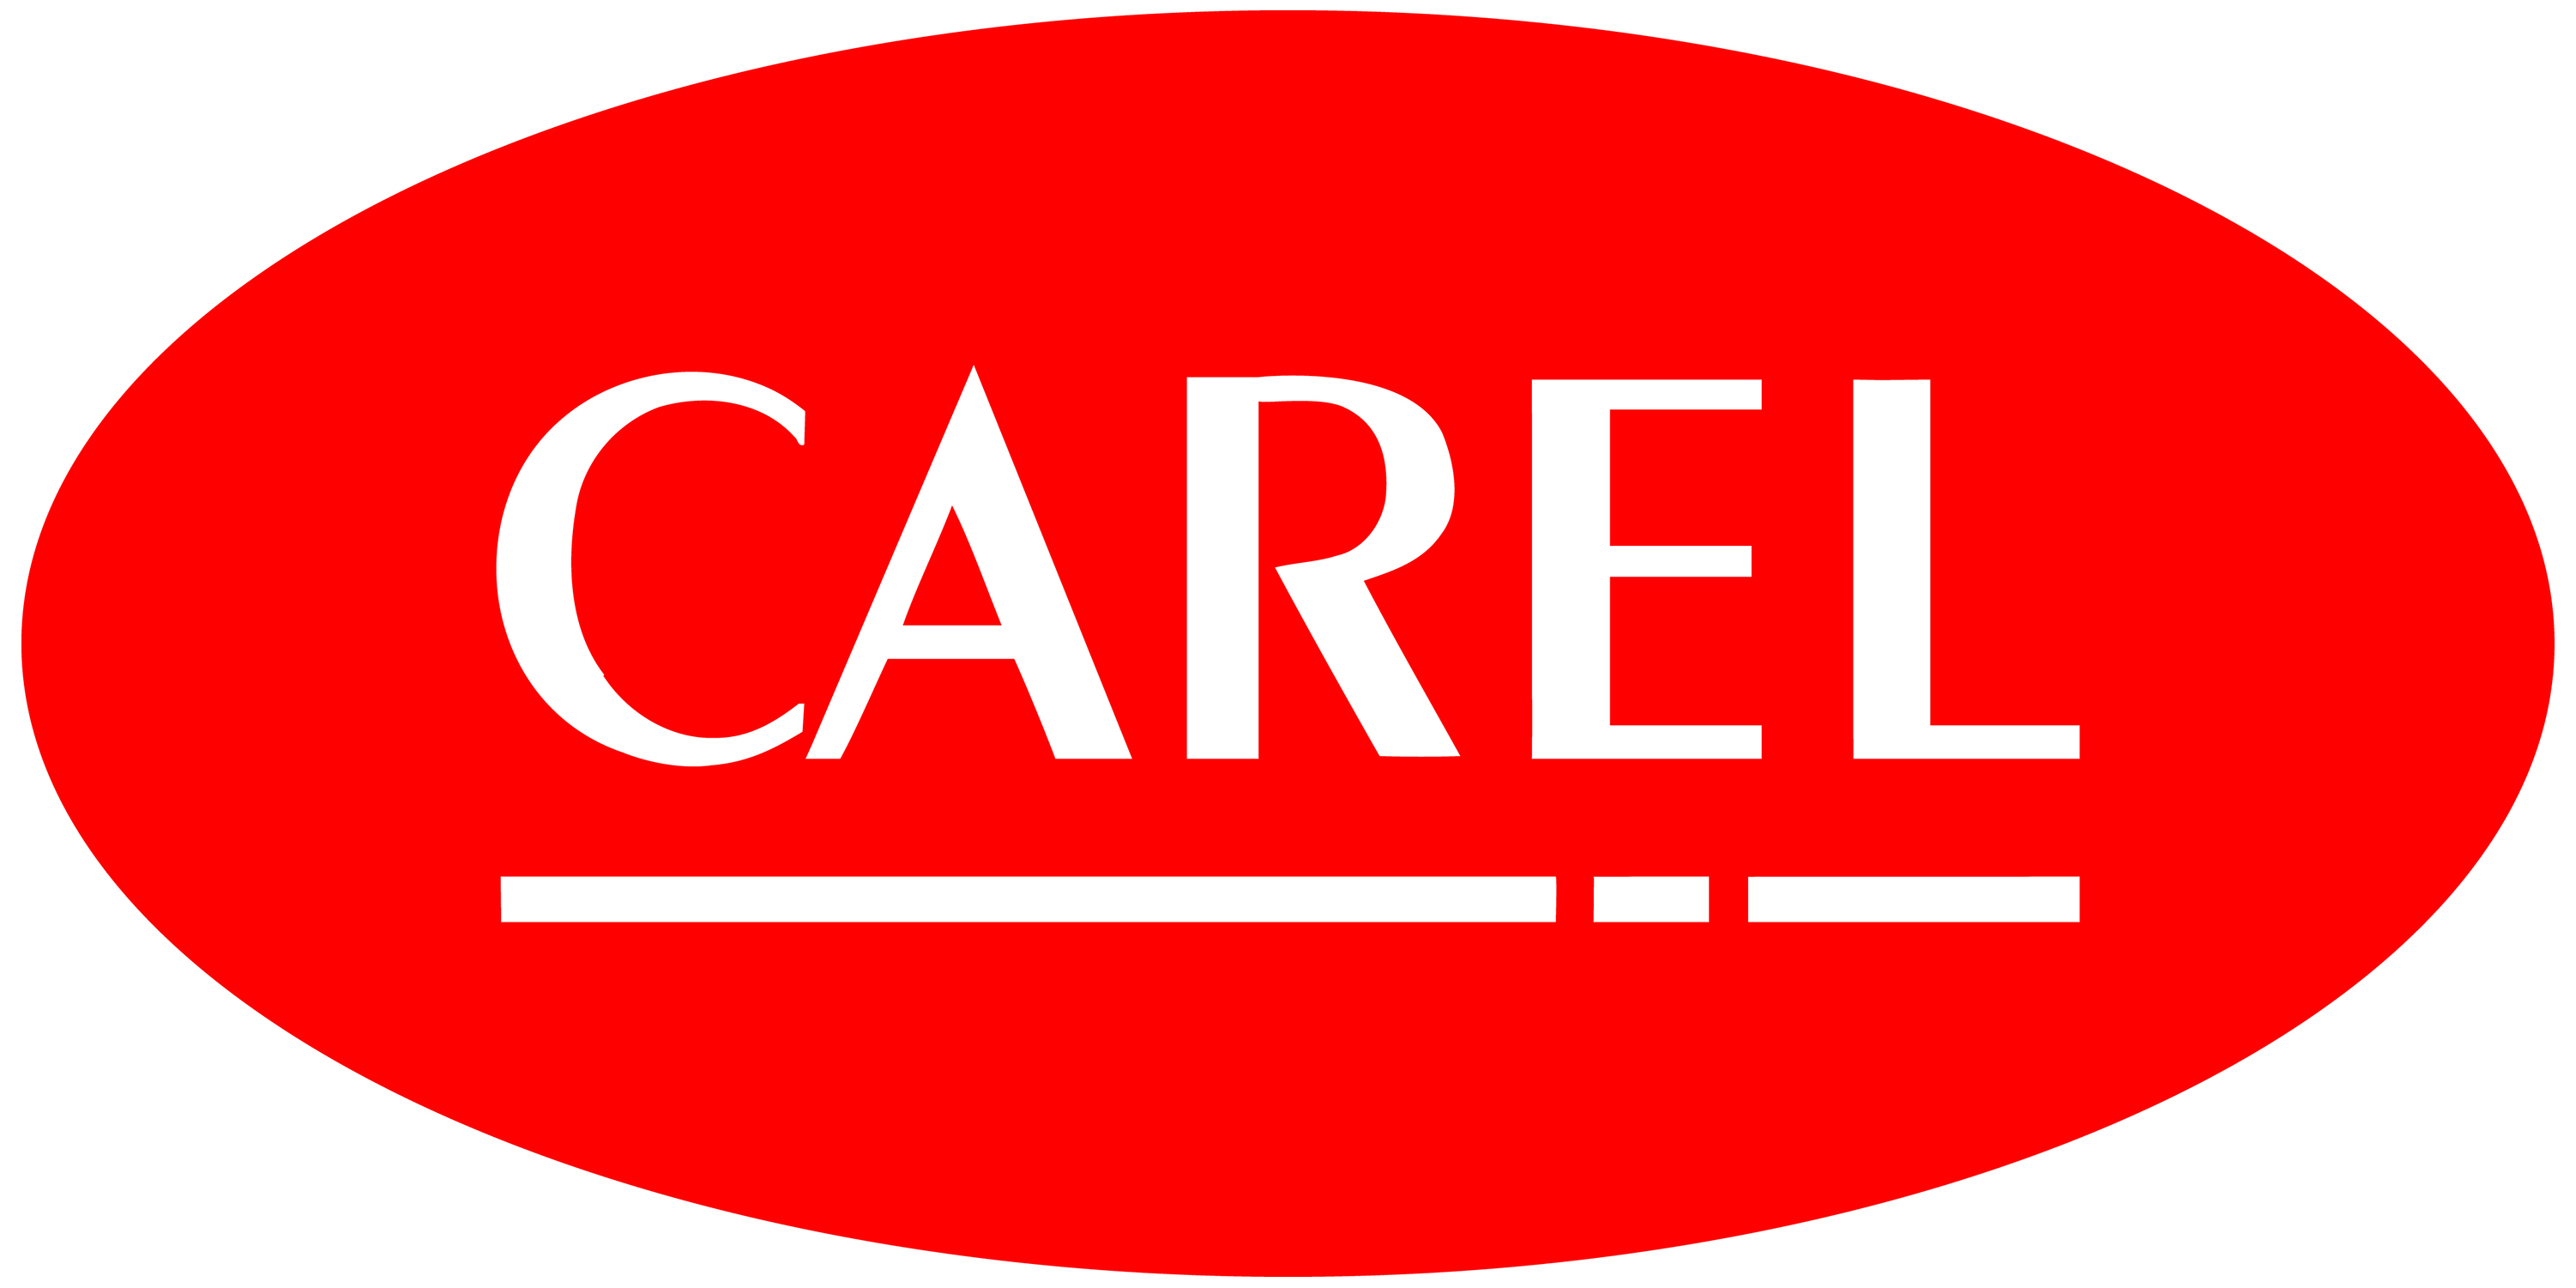 CAREL’s career opportunities